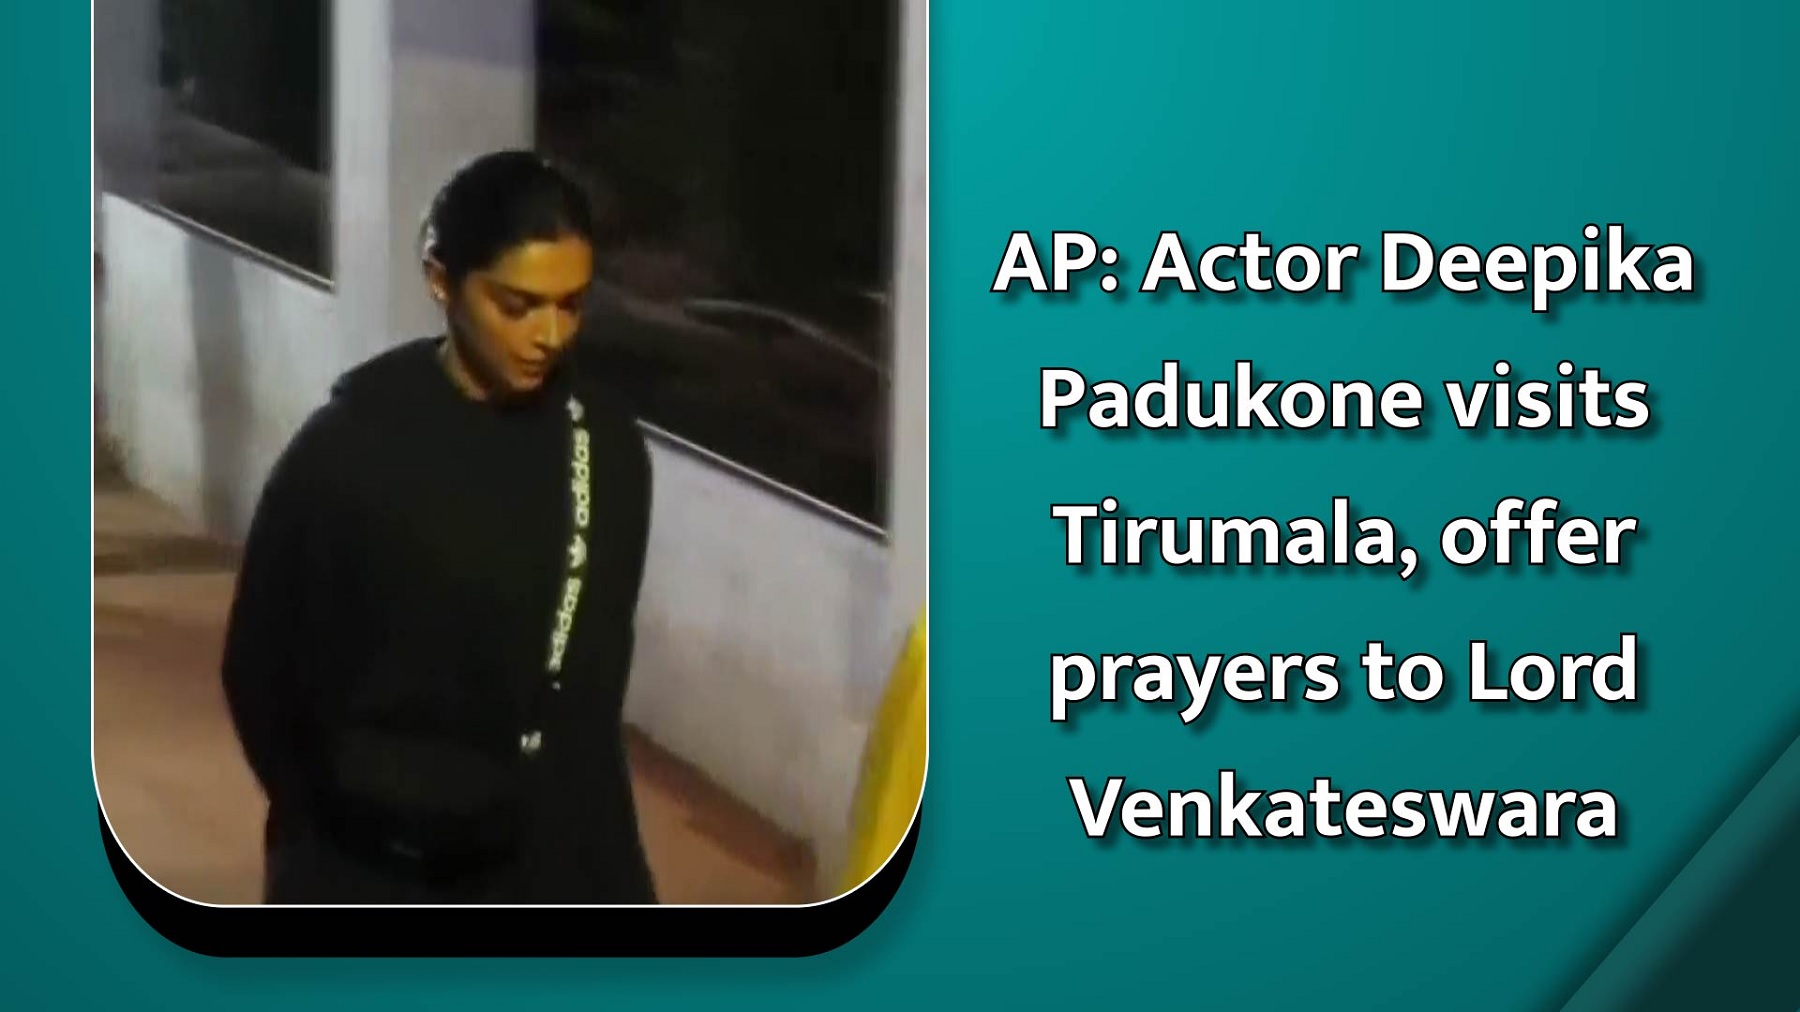 AP: Actor Deepika Padukone visits Tirumala, offer prayers to Lord Venkateswara